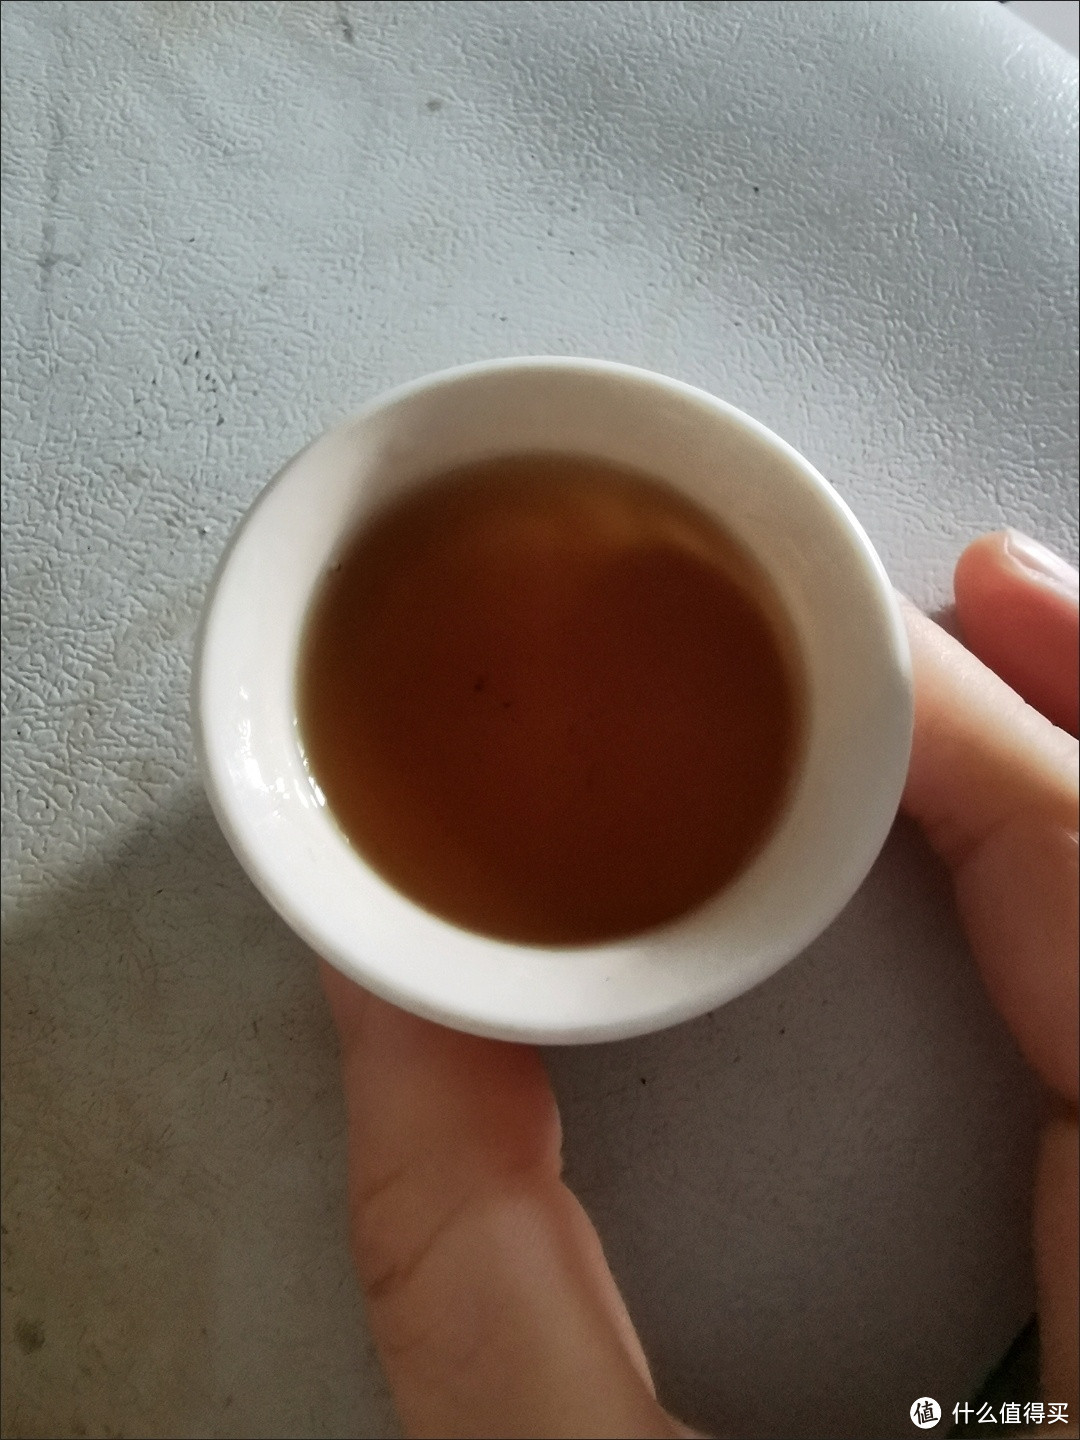 一杯好茶为春天加酚，香醇红茶